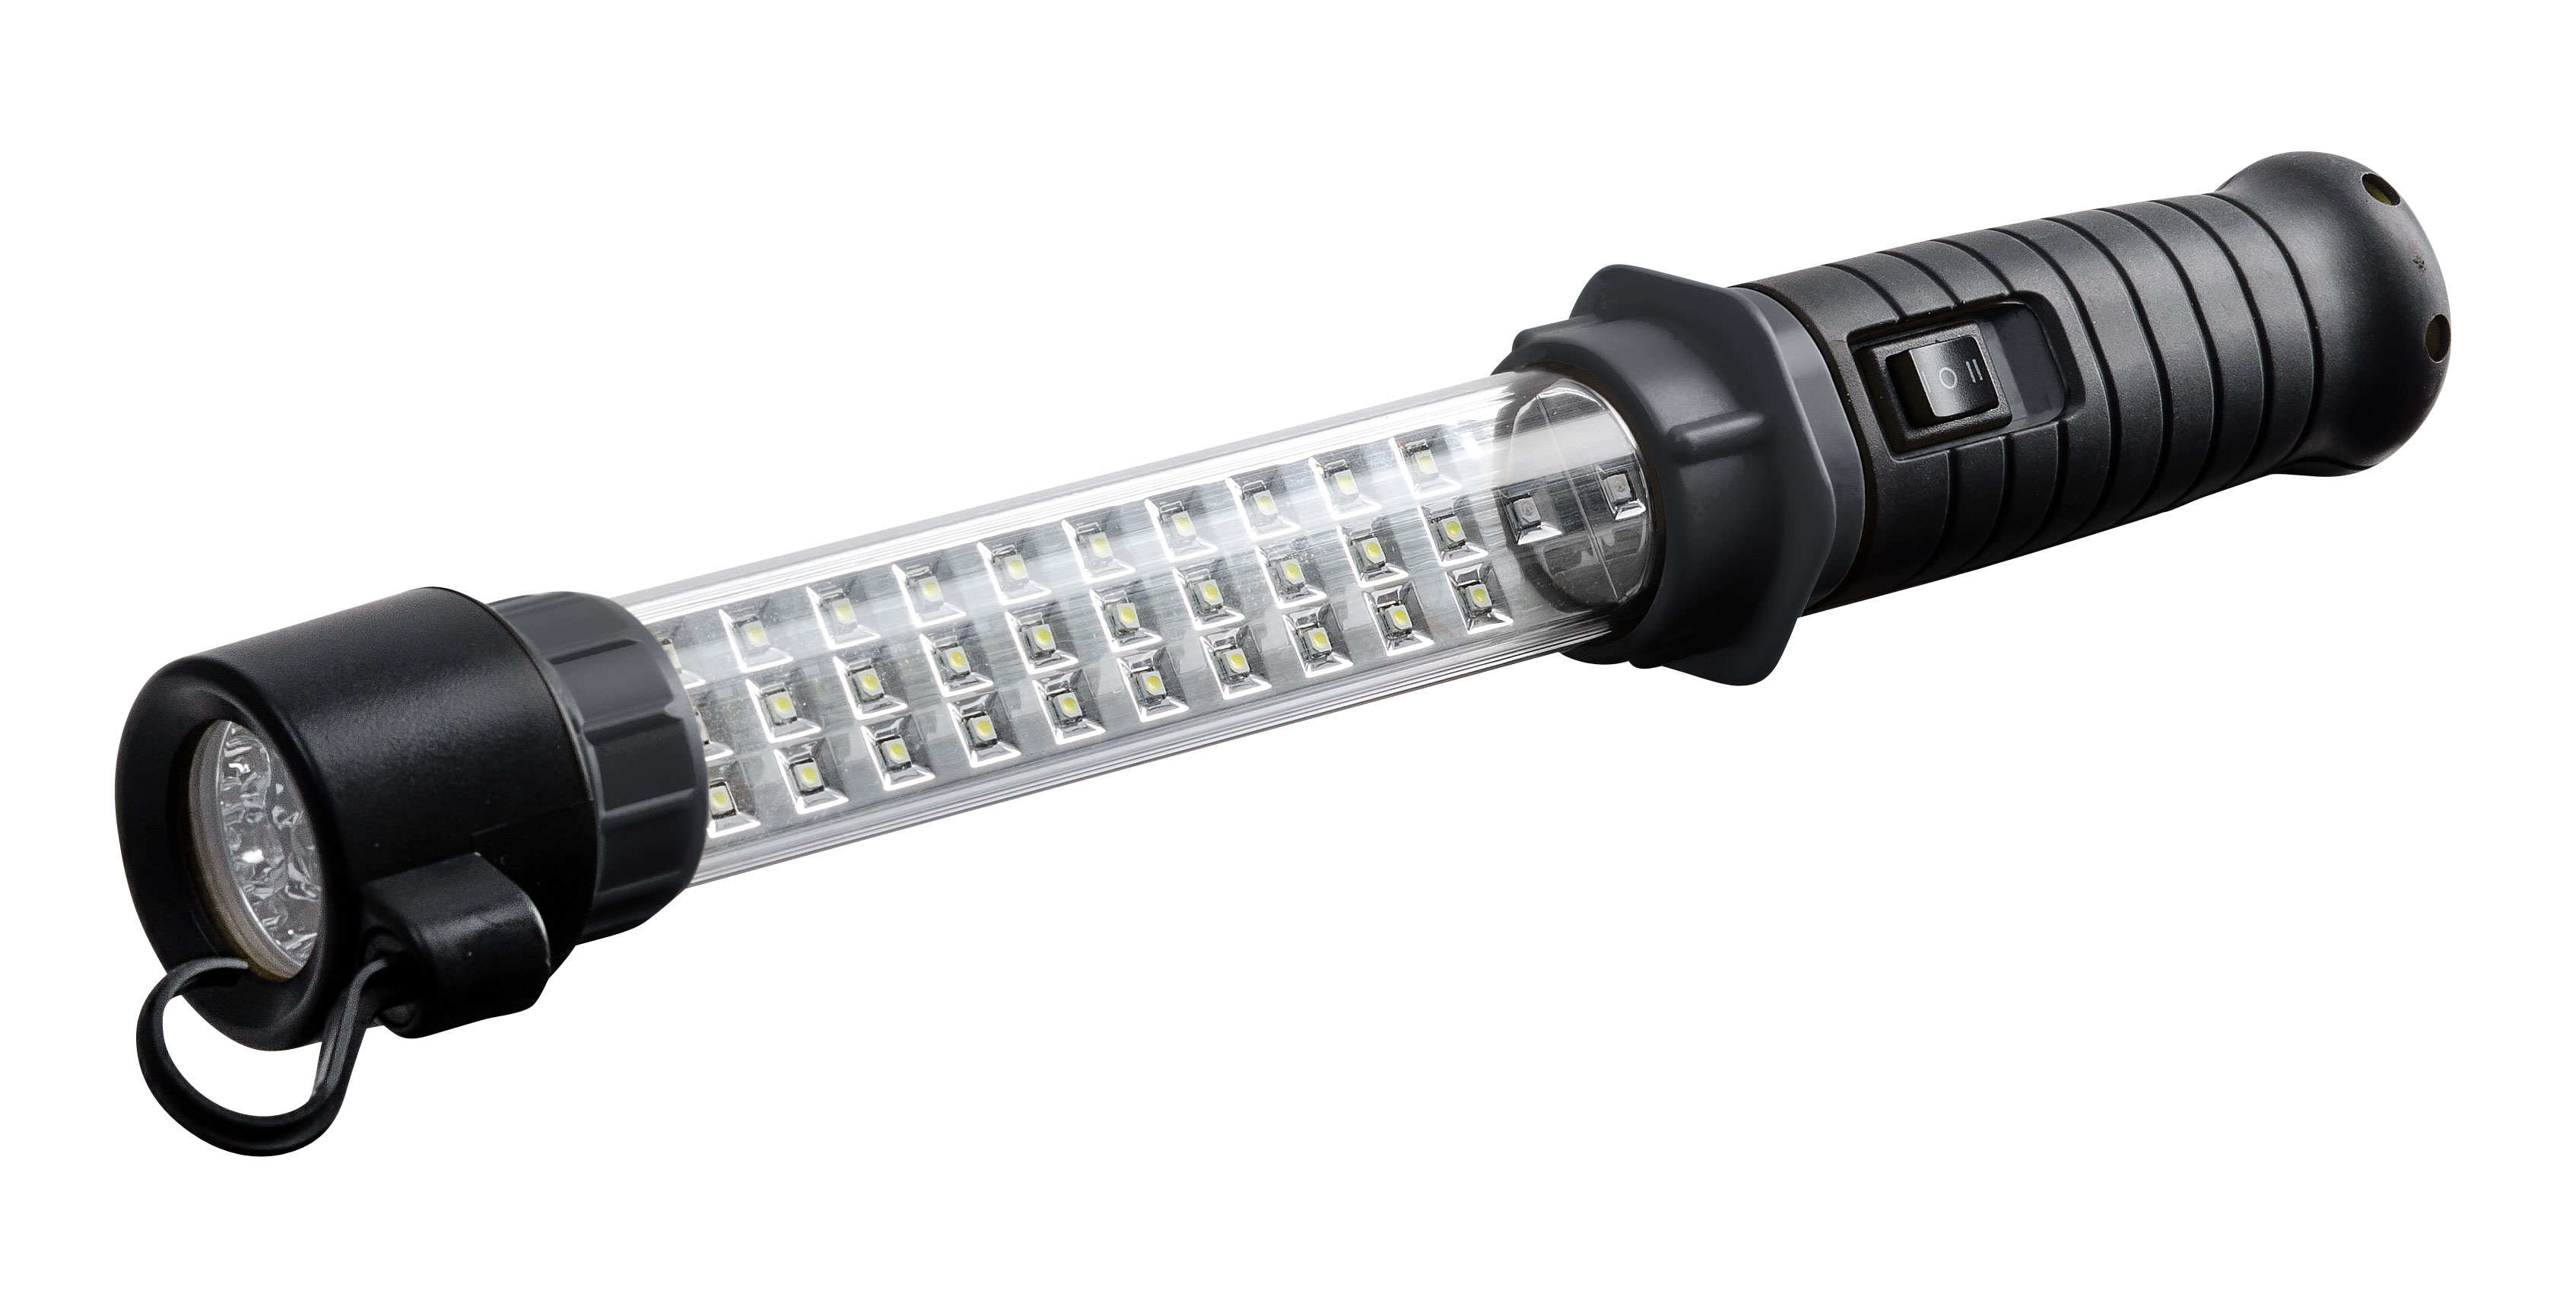 Billiga Handlampa LED, uppladdningsbar online på nätet